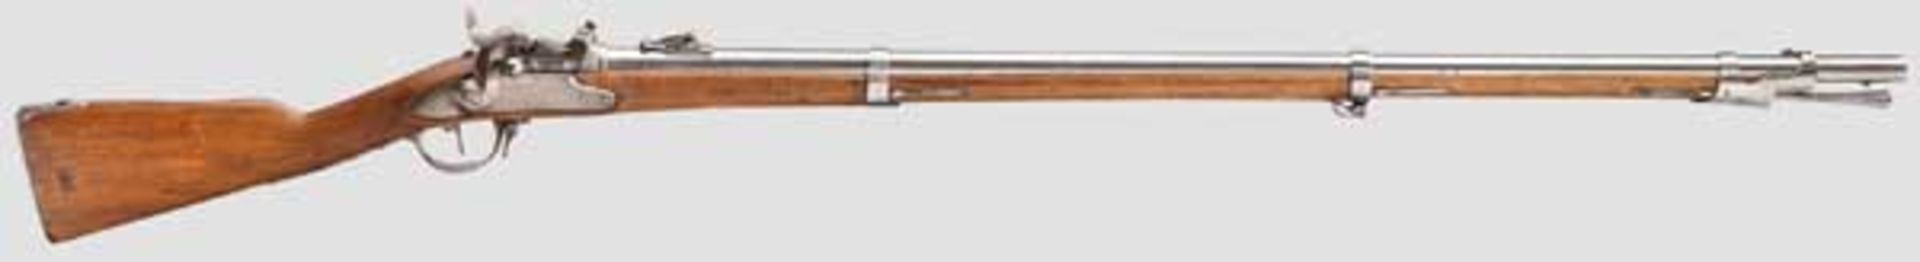 Infanteriegewehr Mod. 1817, St. Blasien, aptiert auf Mod. 1842/59/67 System Milbank-Amsler, mit